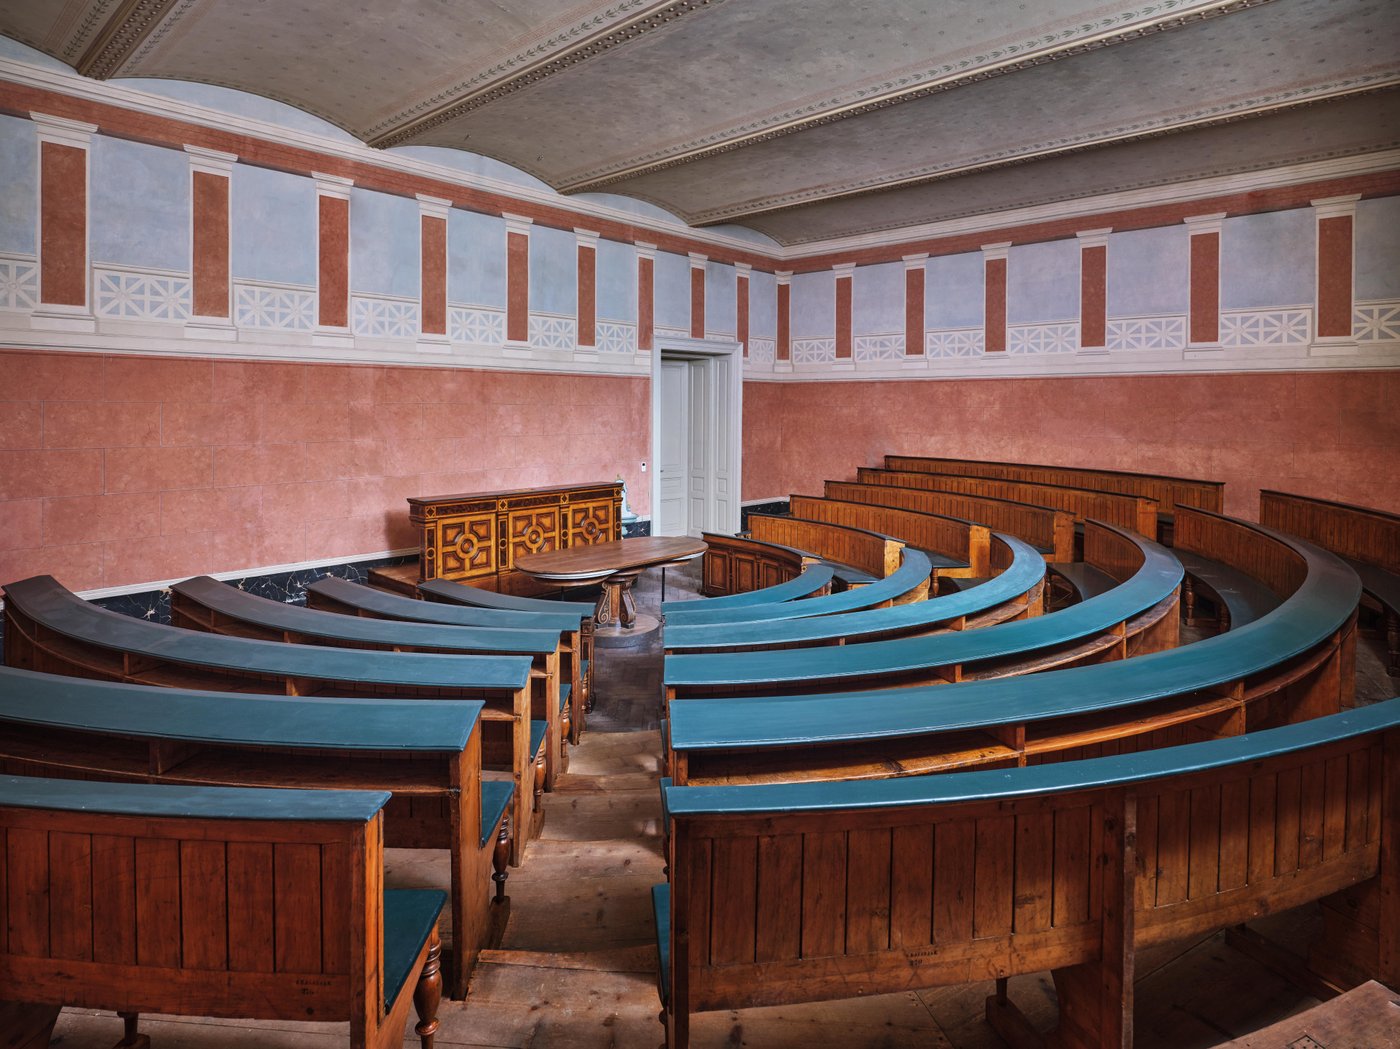 Ansicht eines Vortragssaales mit im halbkreis angeordneten Lehrstühlen und Rednerpult, Terrakottawände